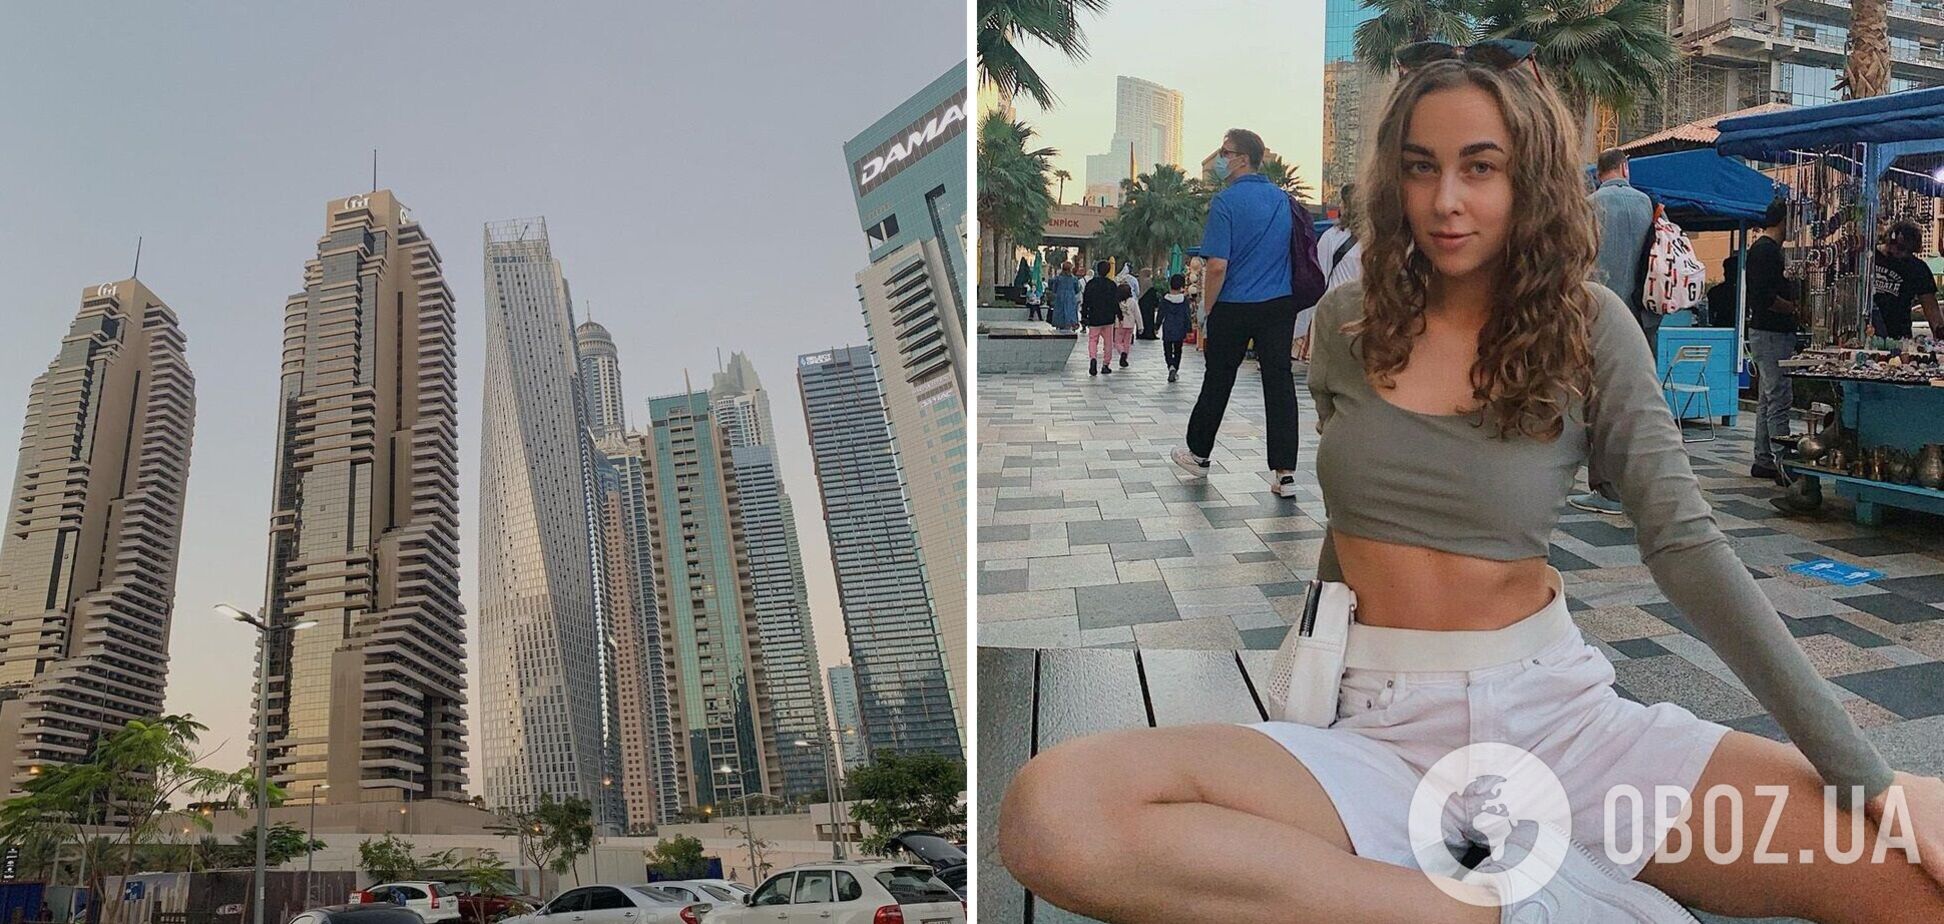 Украинка, которая открестилась от голой фотосессии в Дубае, показала свое «максимум» обнаженных фото